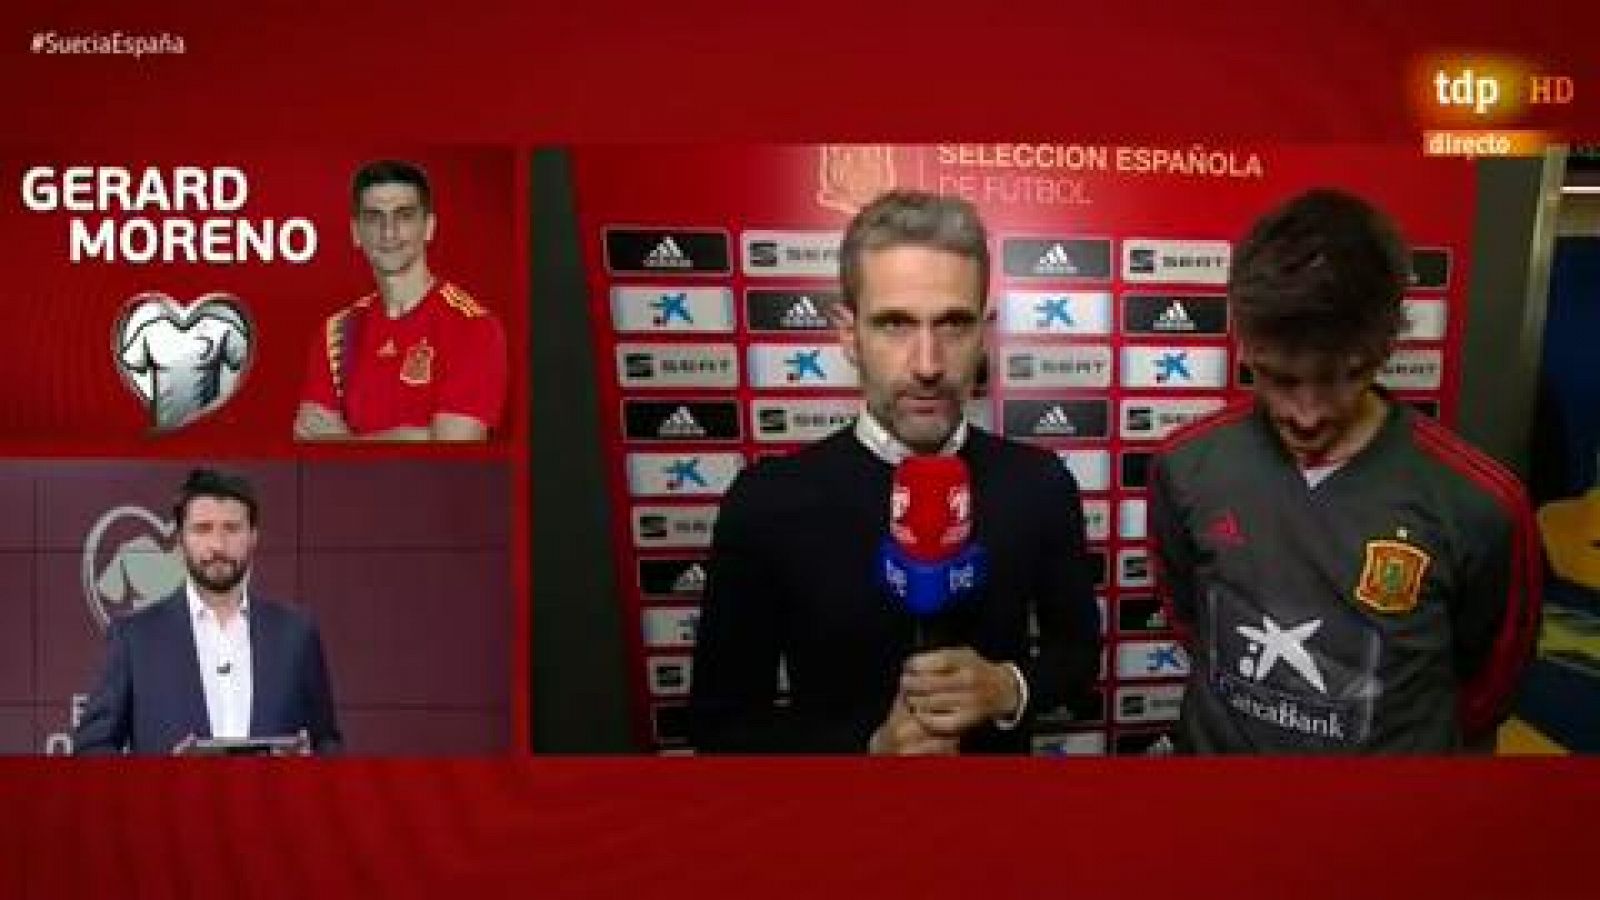 Eurocopa 2020 - Gerard Moreno: "Debutar con la selección es lo máximo" - RTVE.es